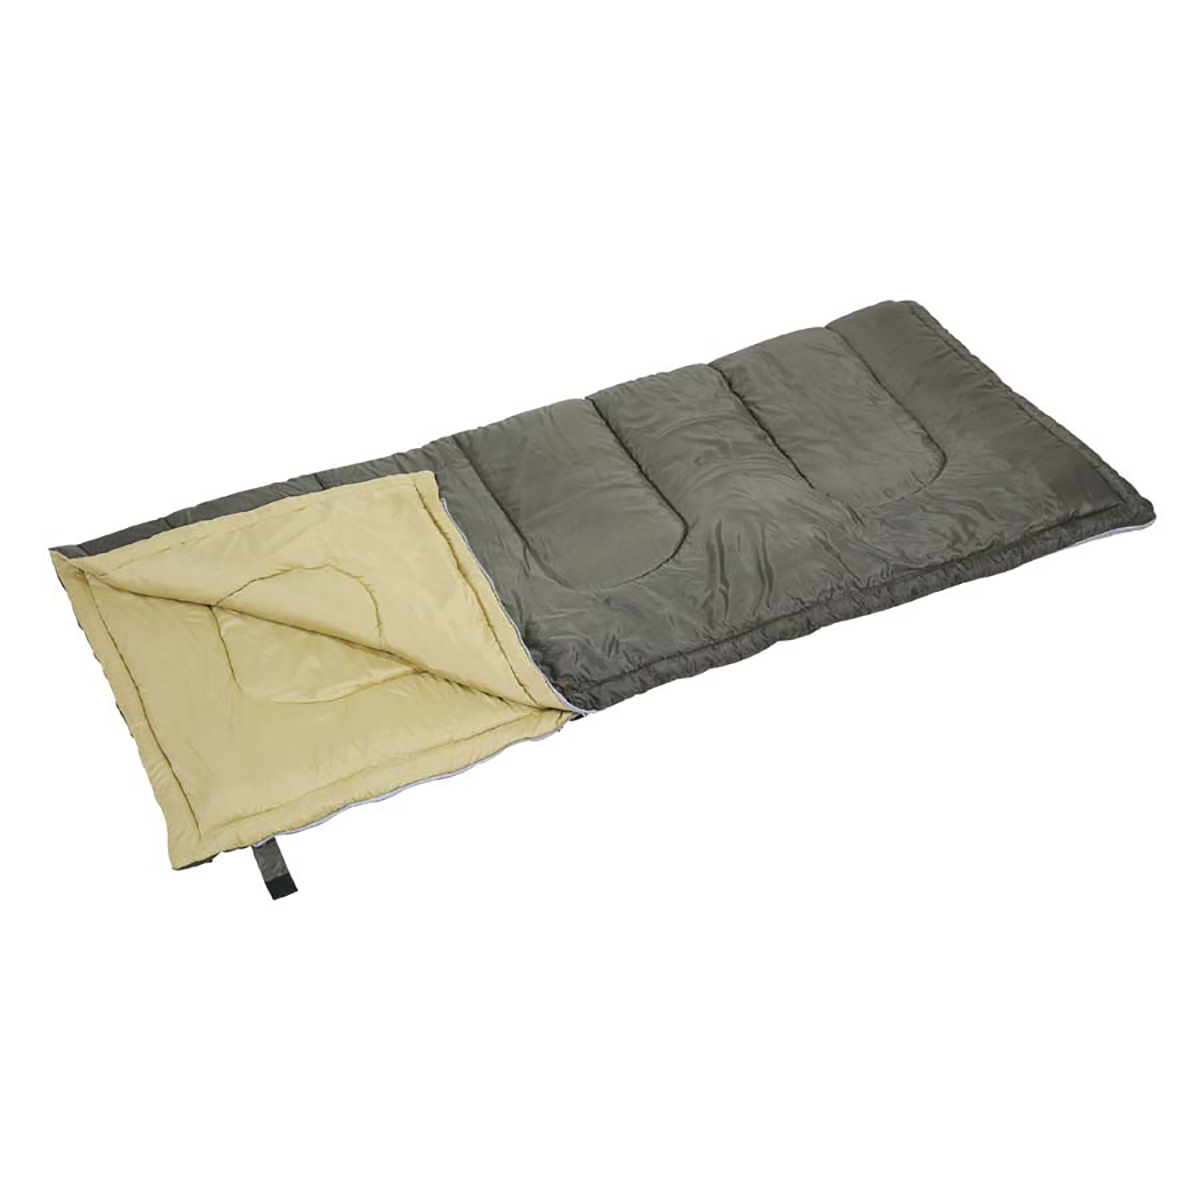 ブラッカ 封筒型シュラフ(寝袋)1000 - アウトドア・キャンプ用品